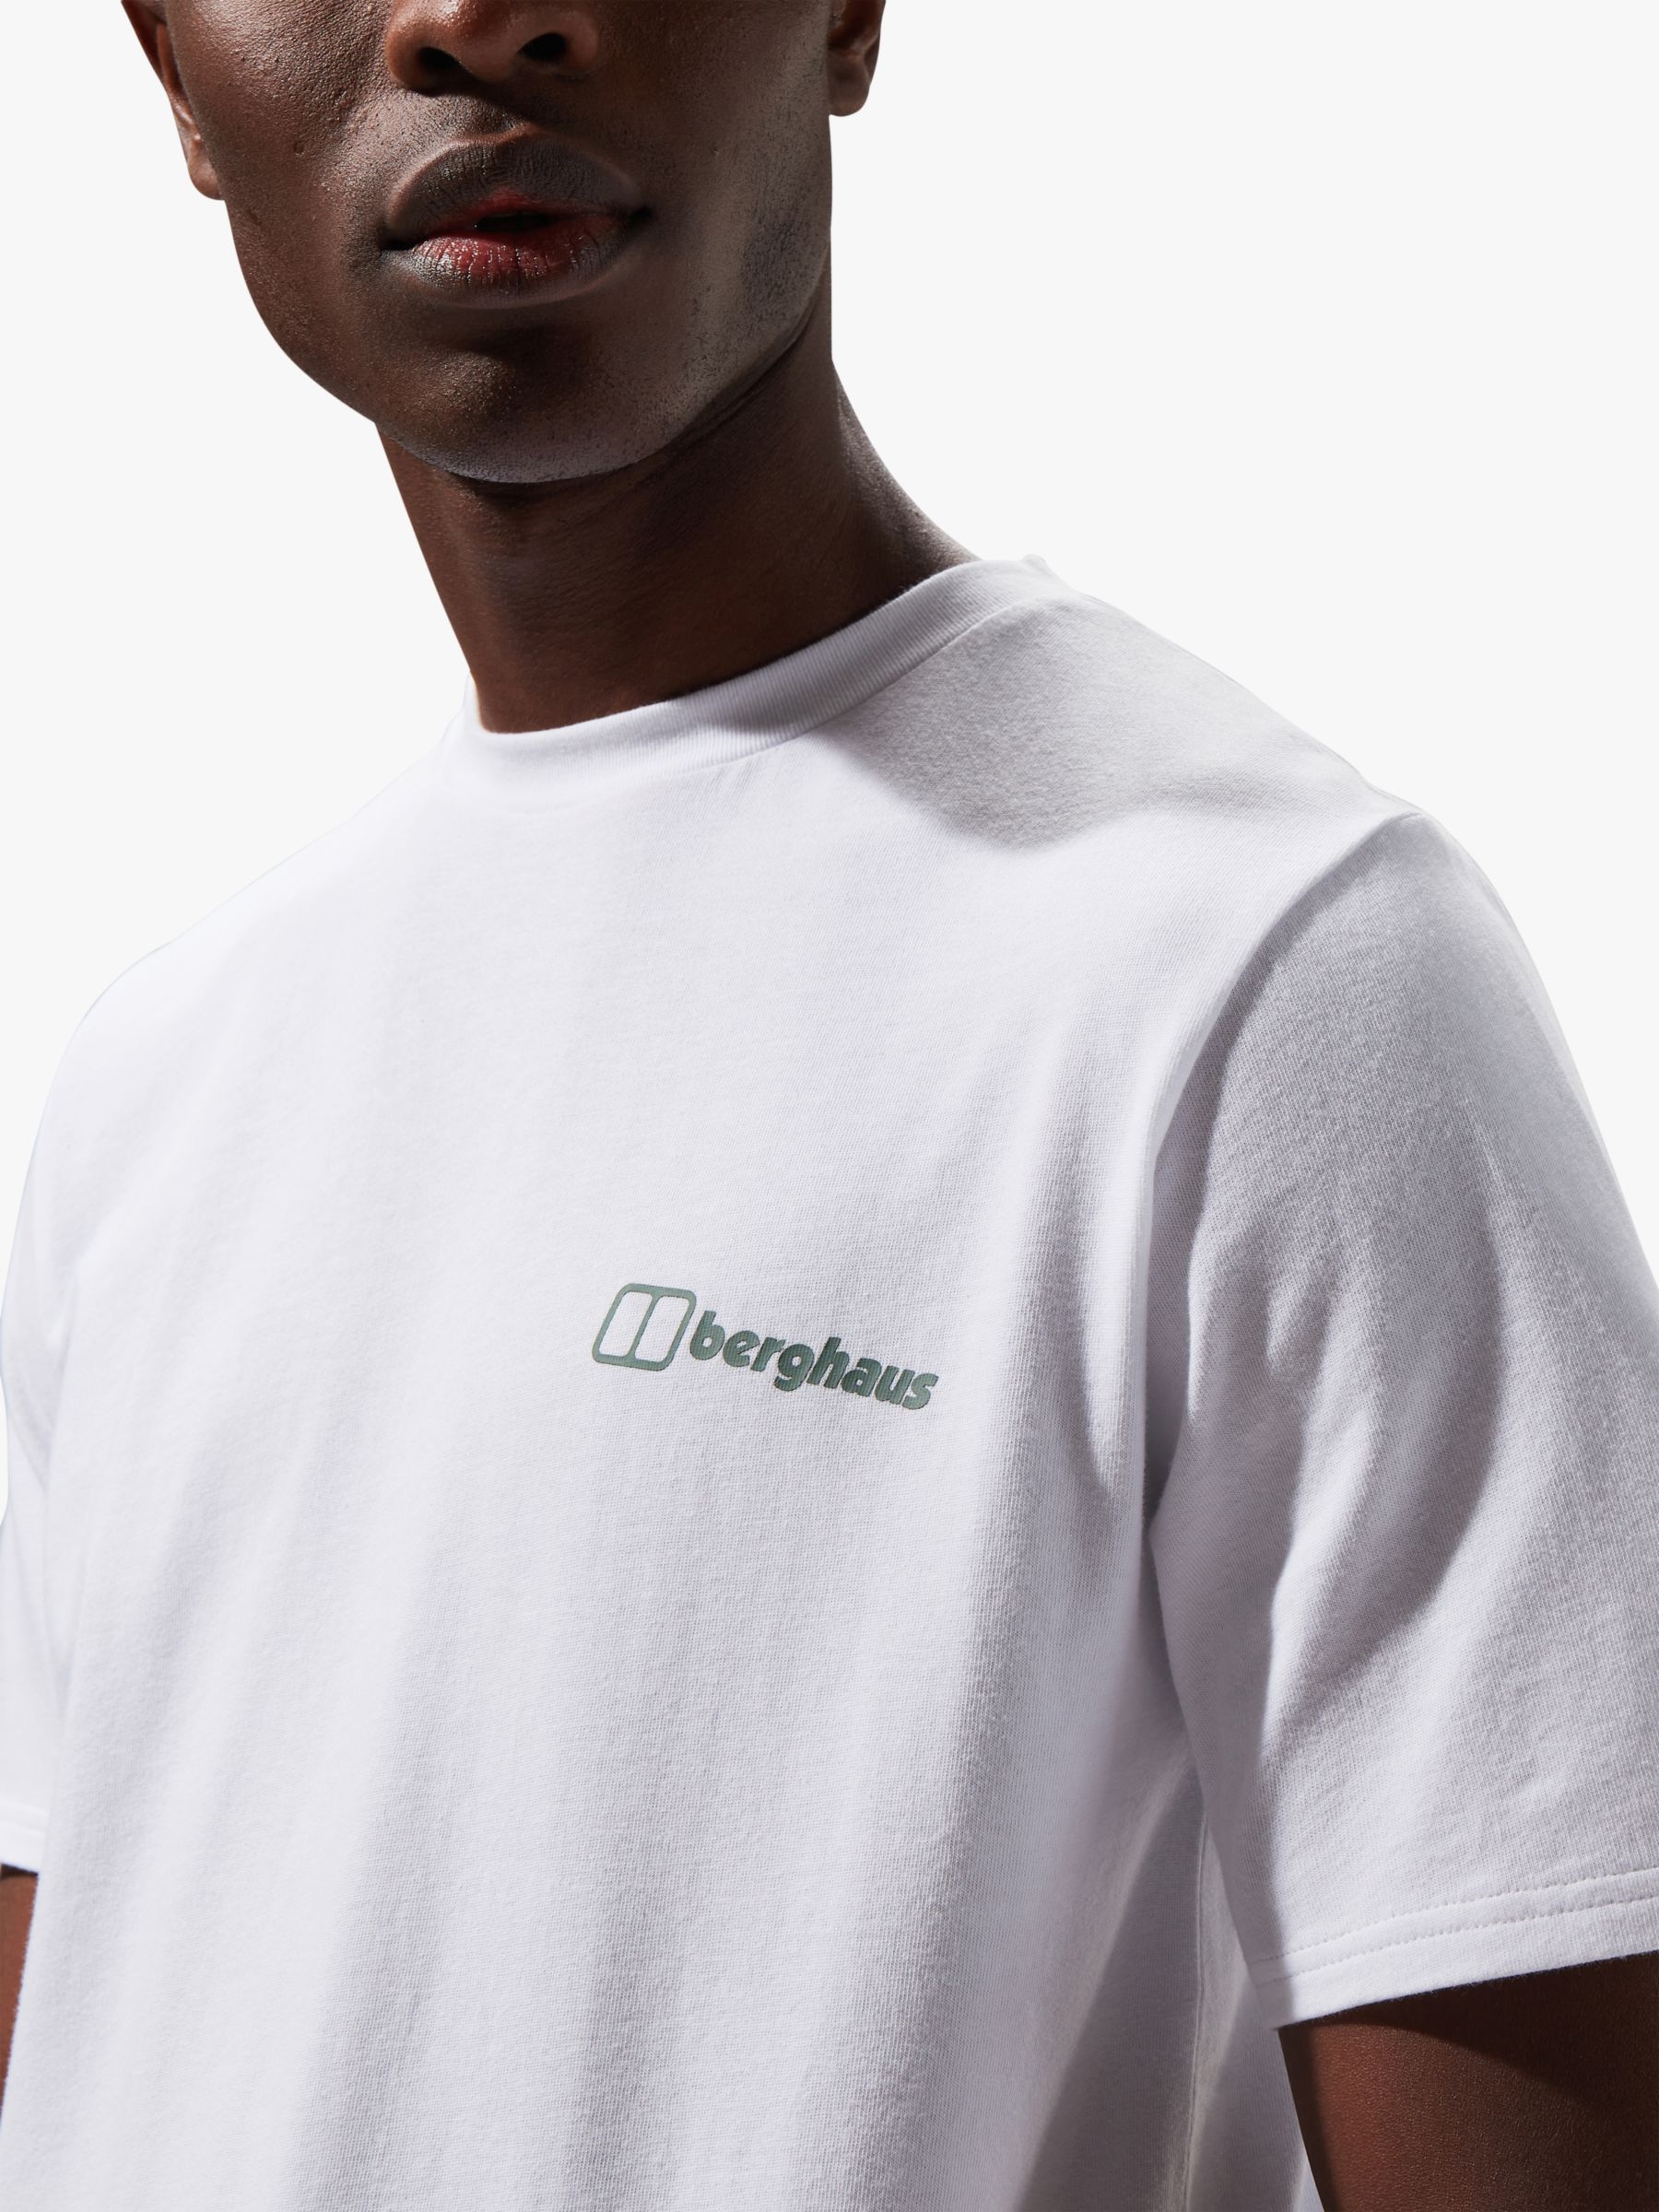 Berghaus Organic Cotton Short Sleeve Graphic T-Shirt, Pure White, M